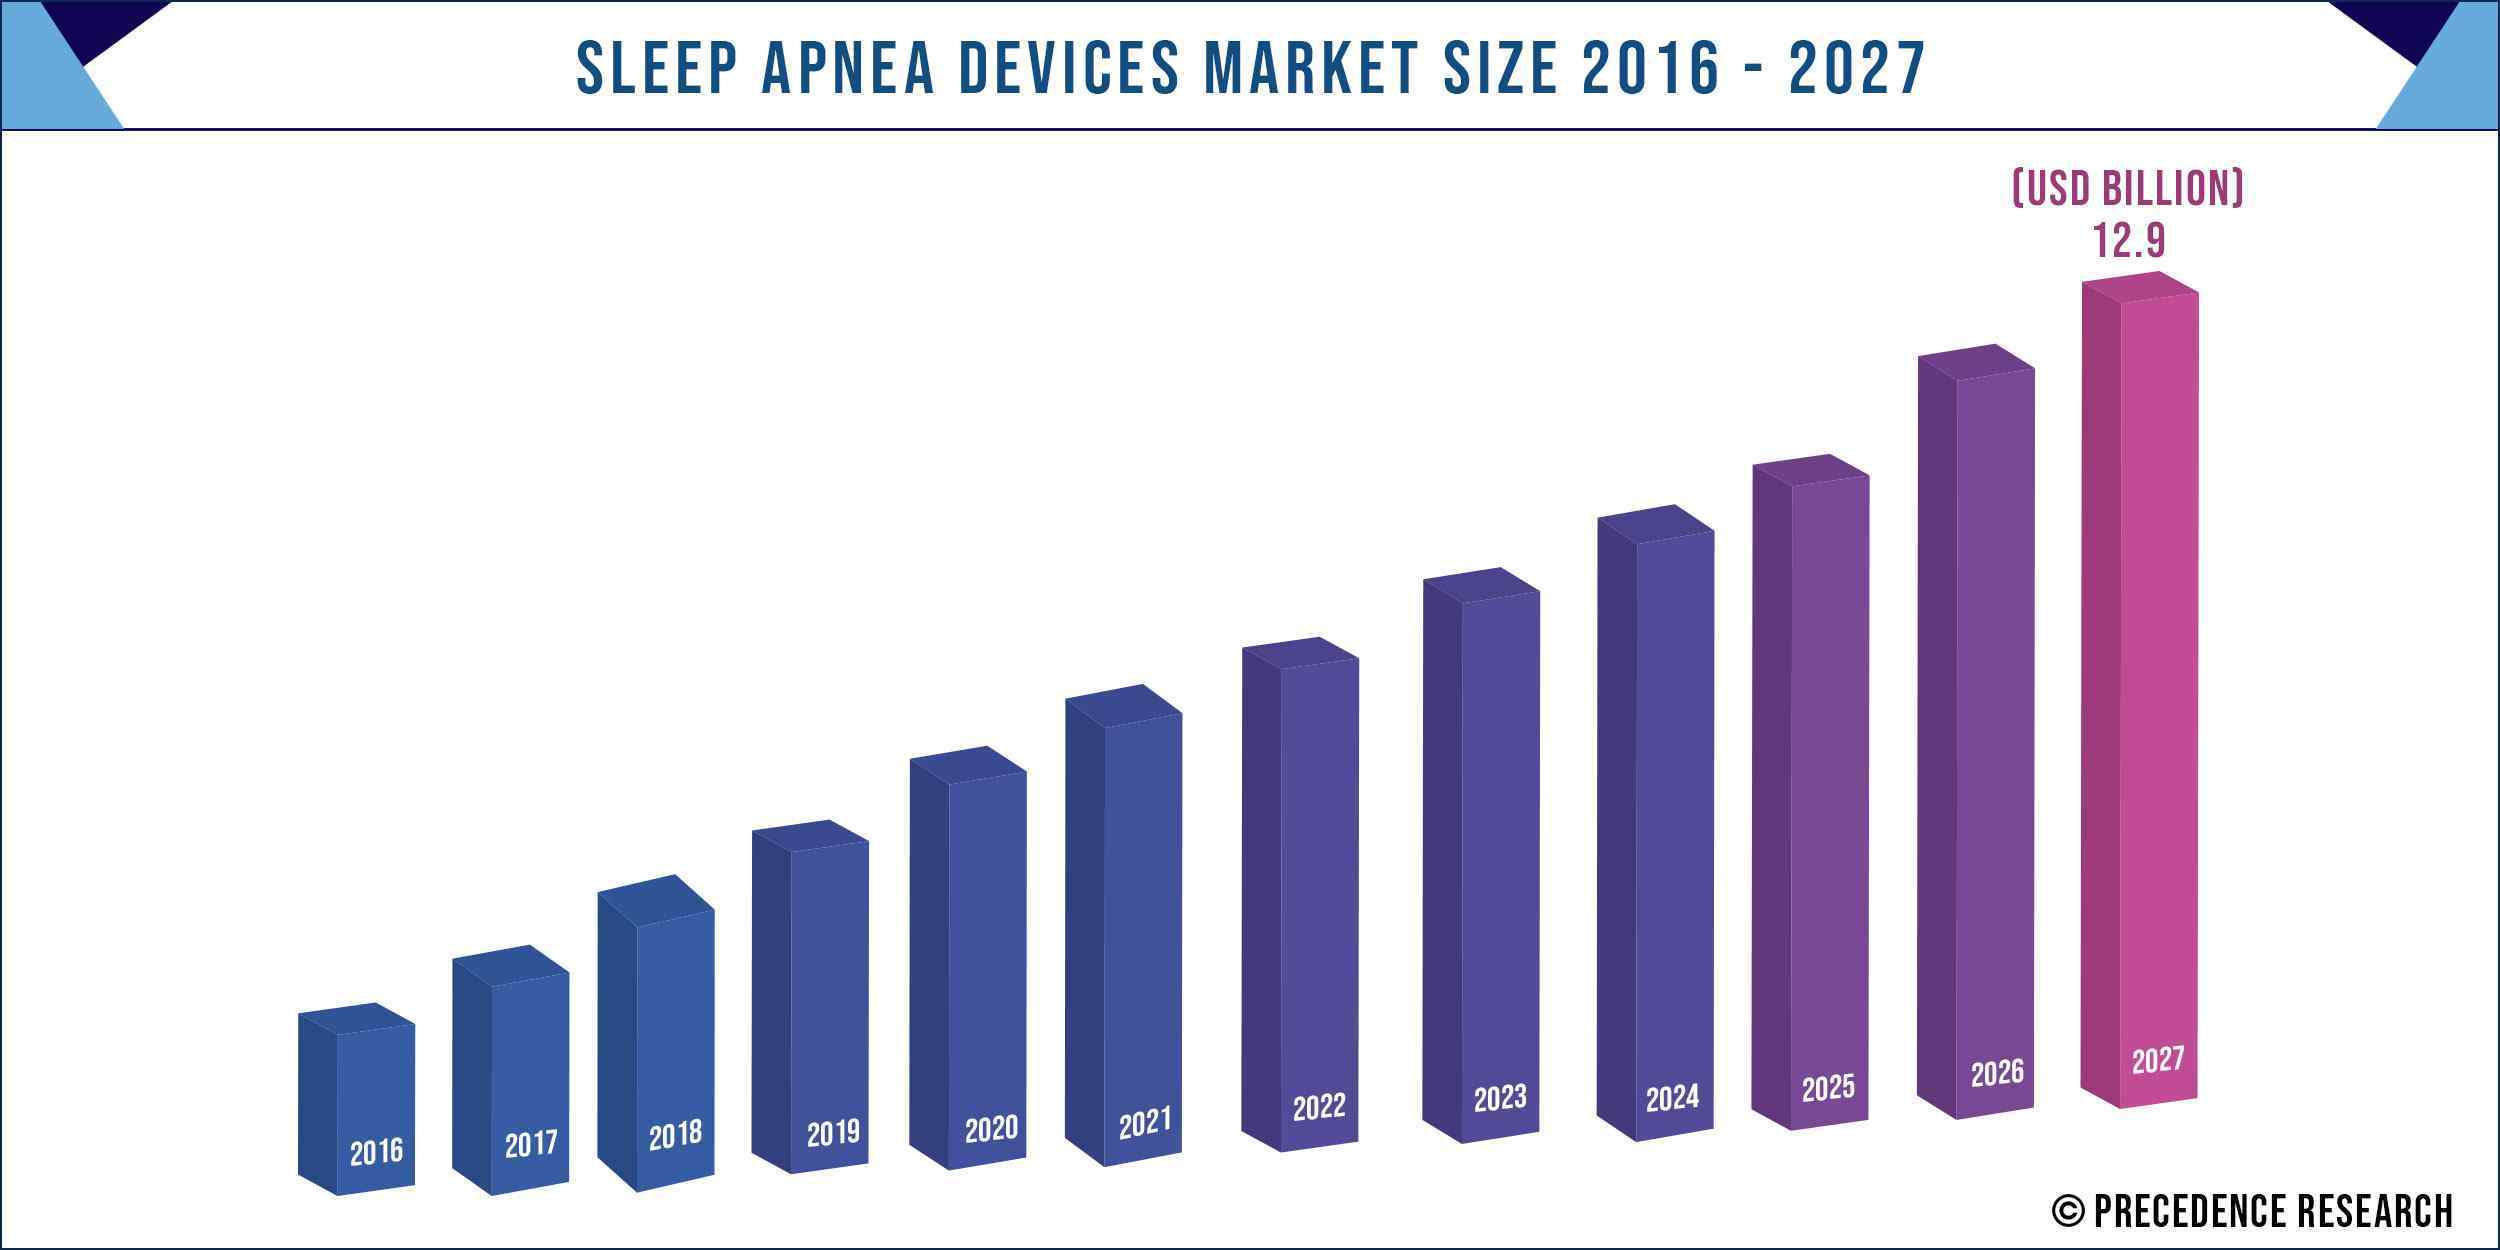 Sleep Apnea Devices Market Size 2016 to 2027